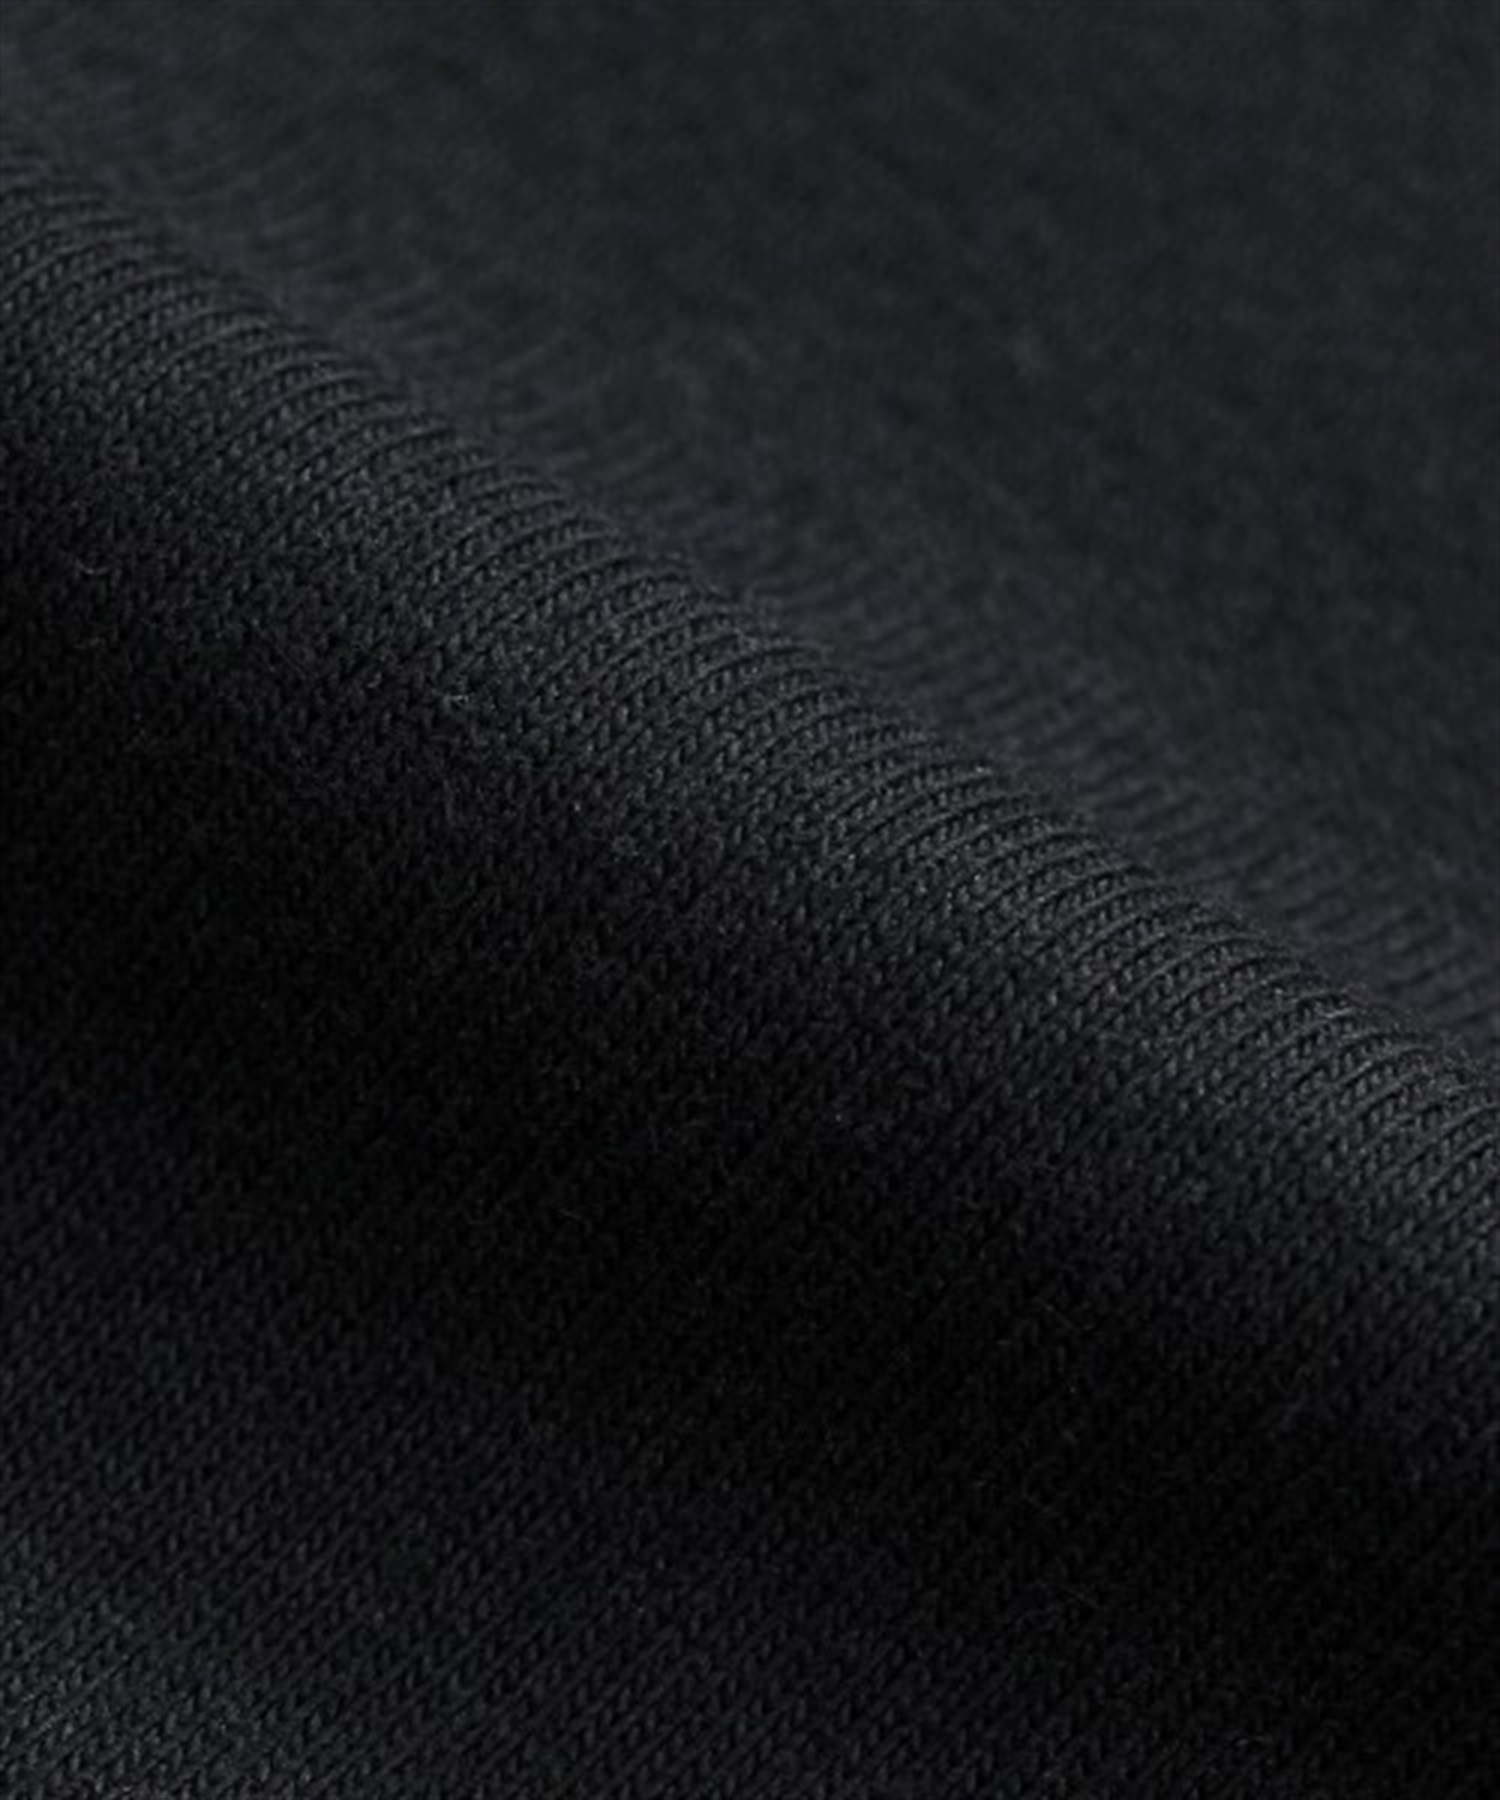 メンズ 半袖 Tシャツ HANES ヘインズ BEEFY CREW NECK T-SHIRT ビーフィー クルーネック Tシャツ H5180(010-S)